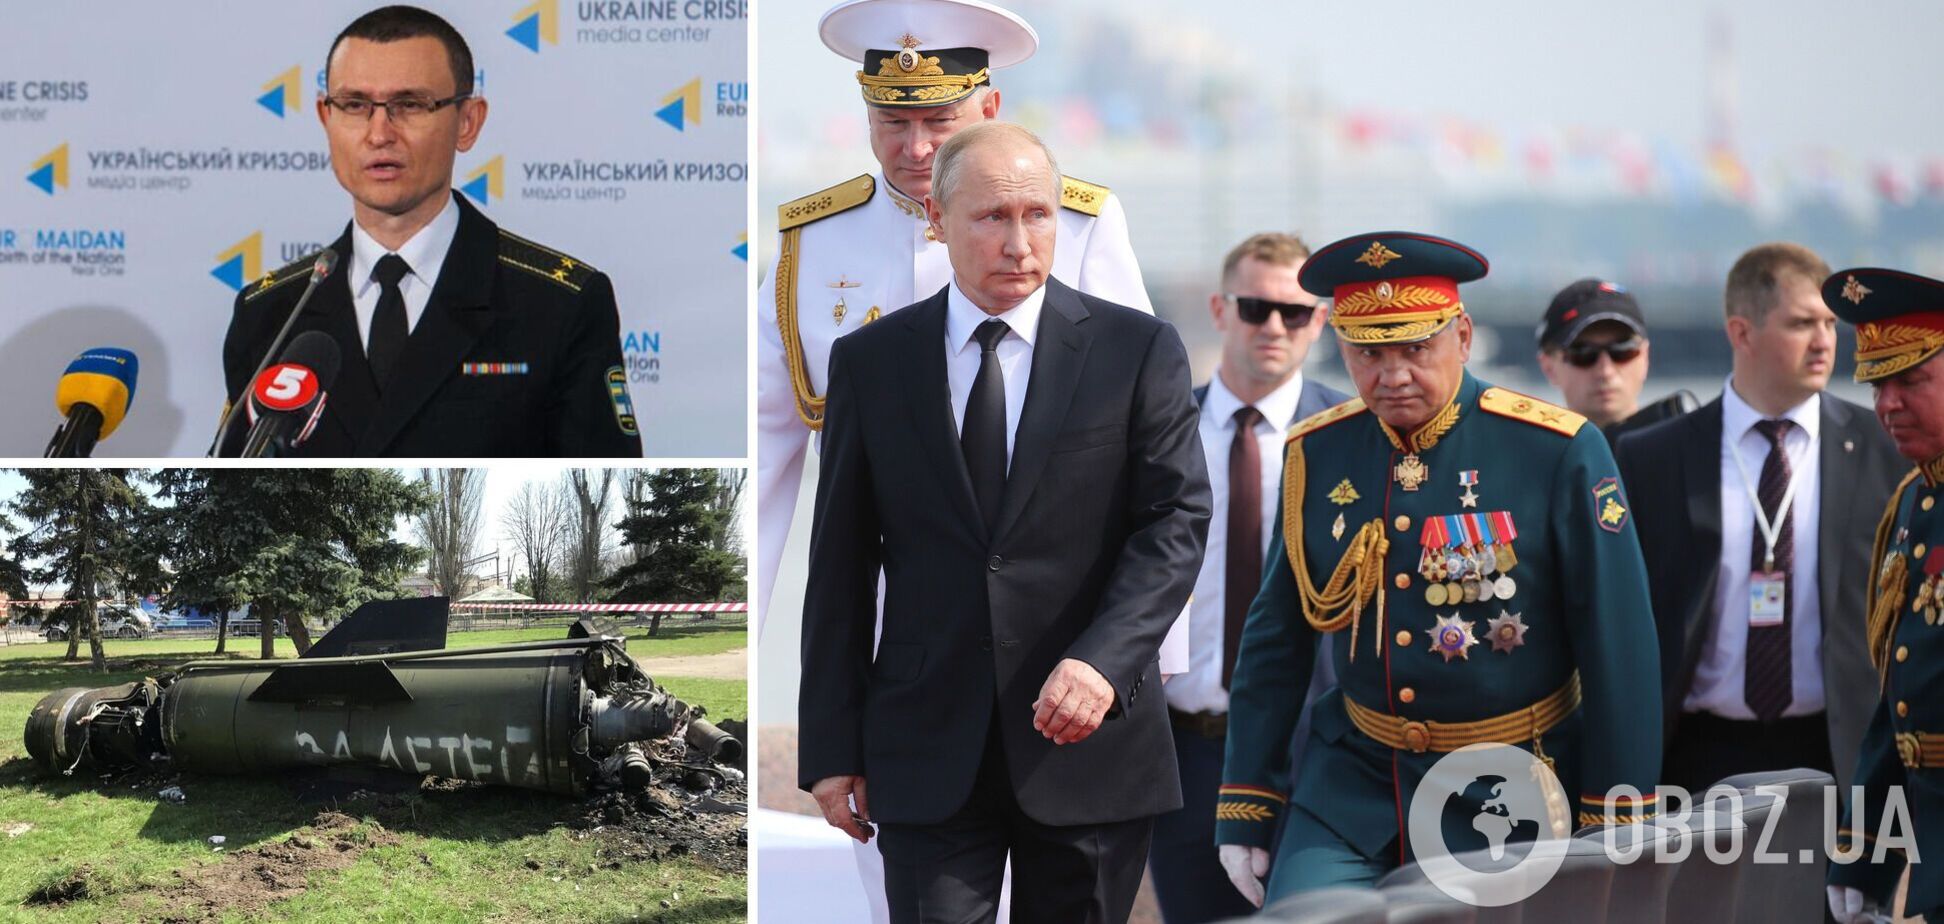 Селезнев: с 'Новороссией' Путин уже проиграл, сил на окружение Краматорска нет. Интервью